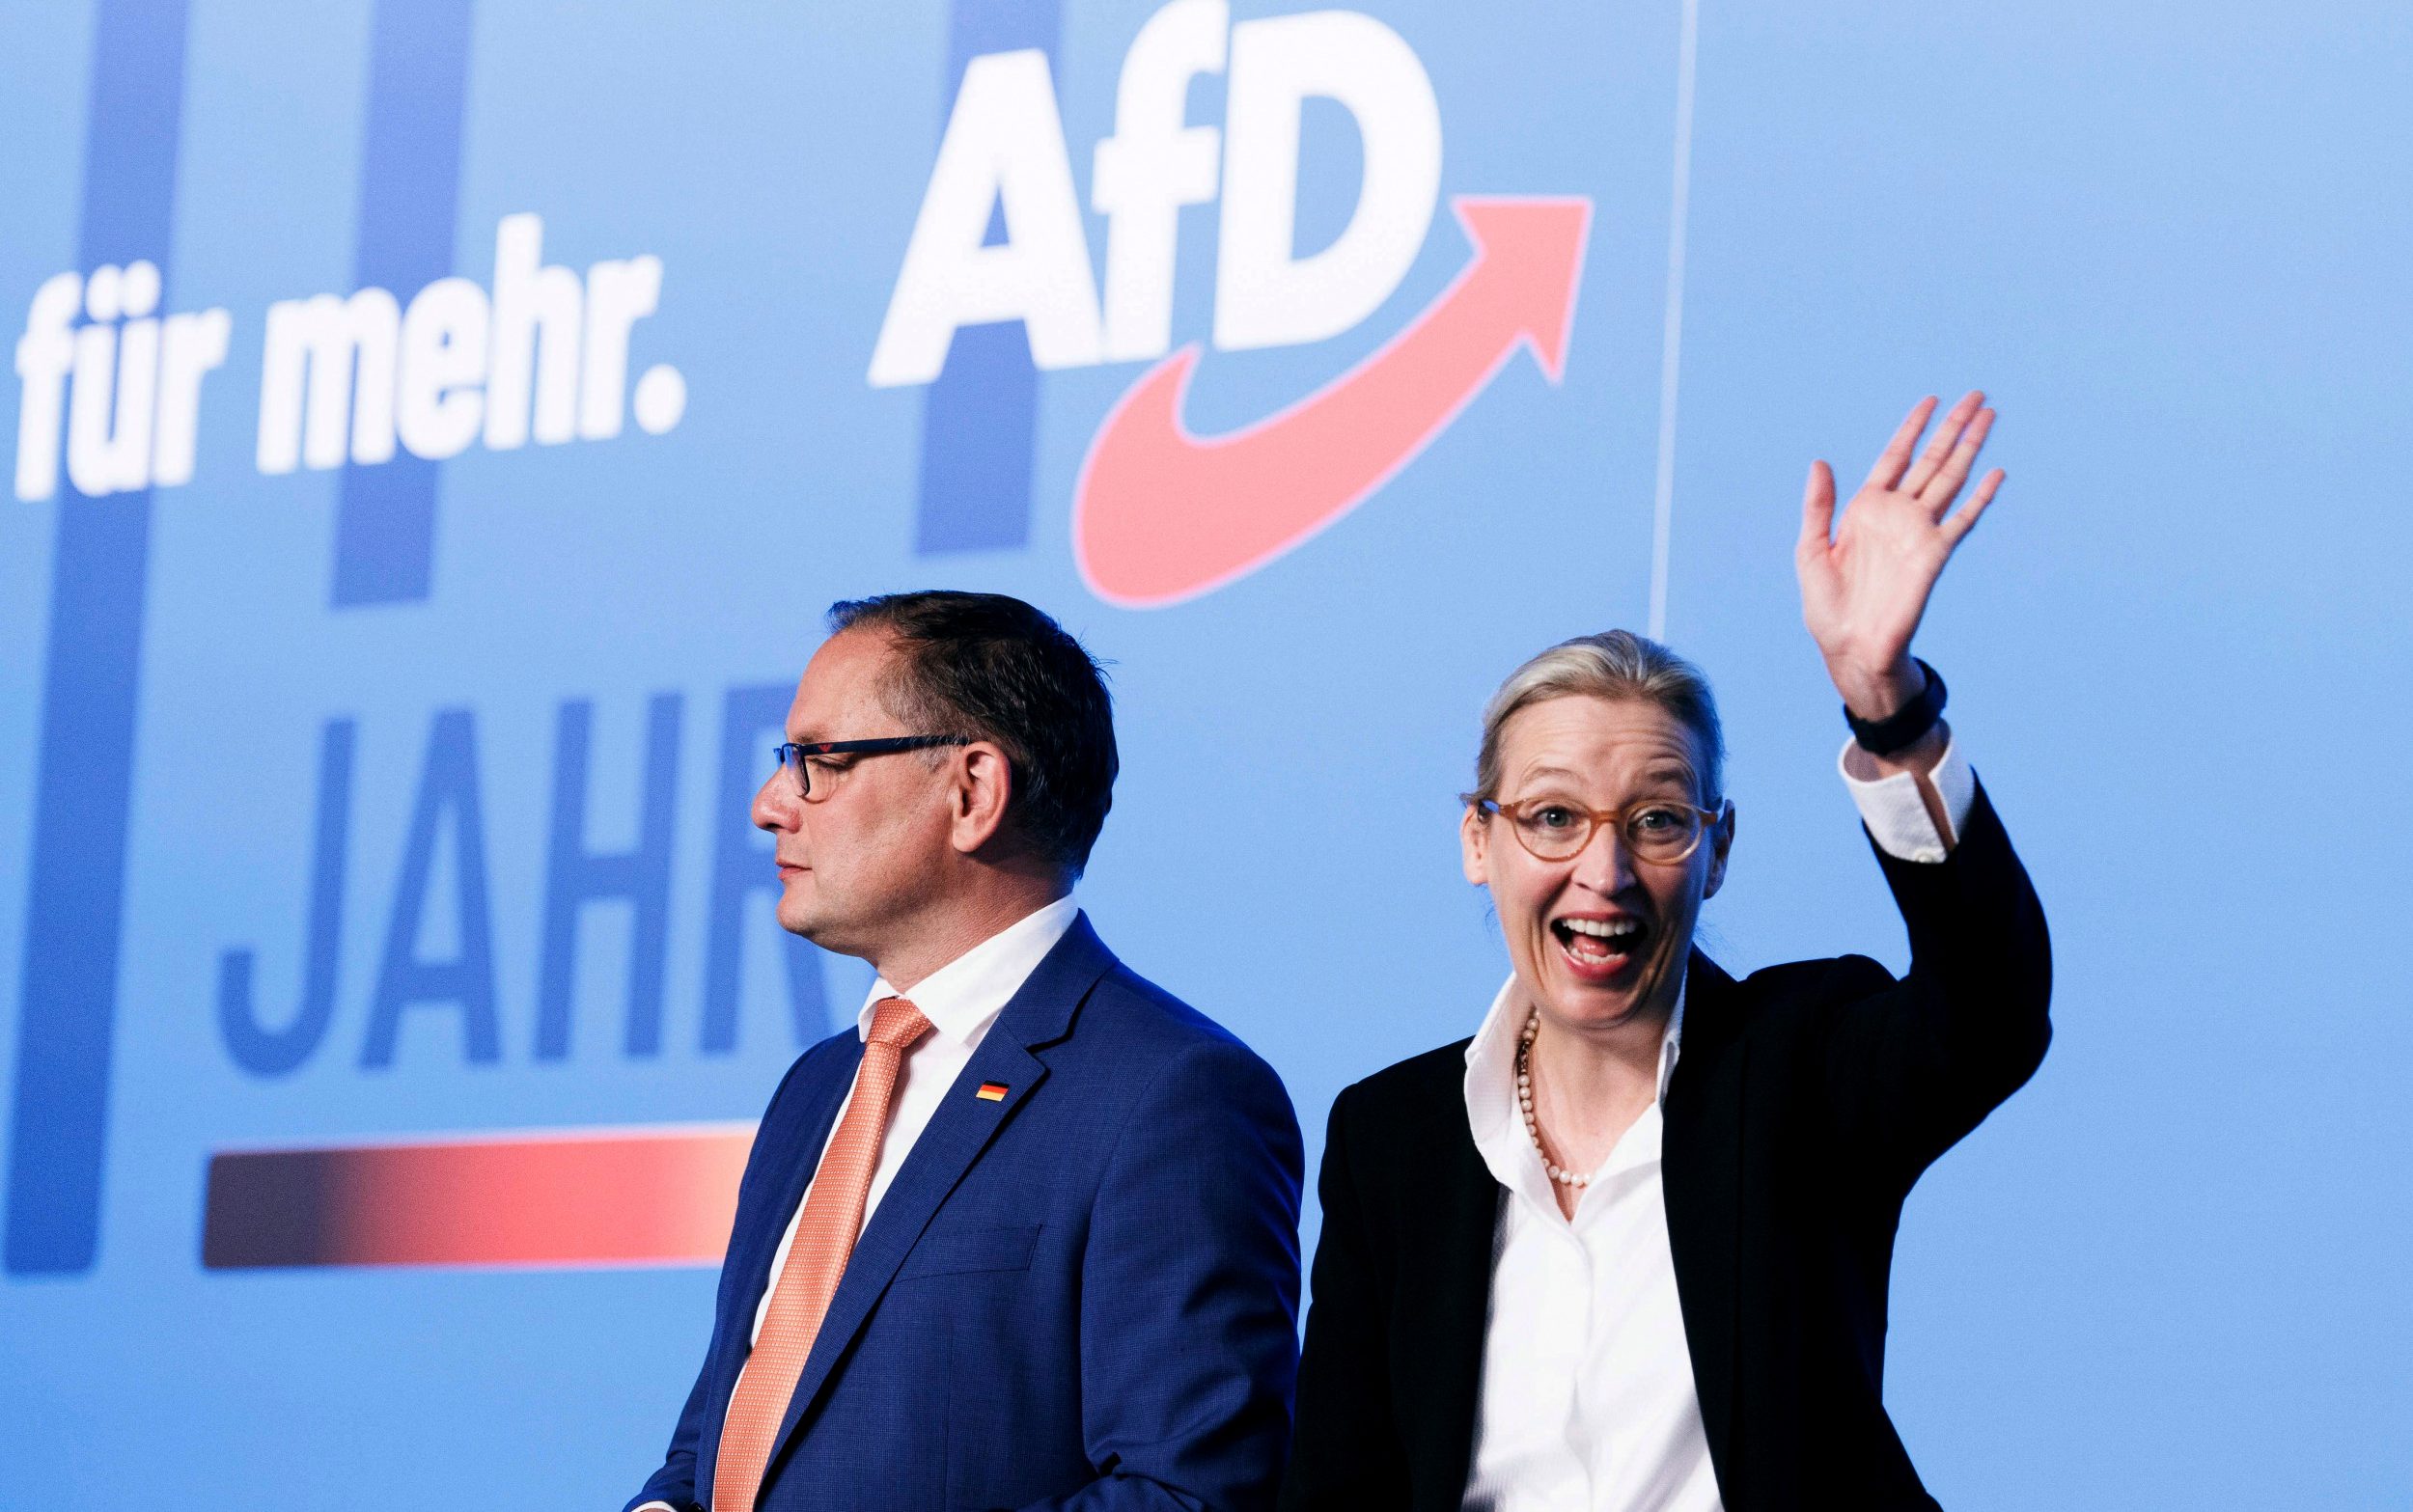 Γερμανία: Δημοψήφισμα για έξοδο από την ΕΕ θέλει το ακροδεξιό AfD